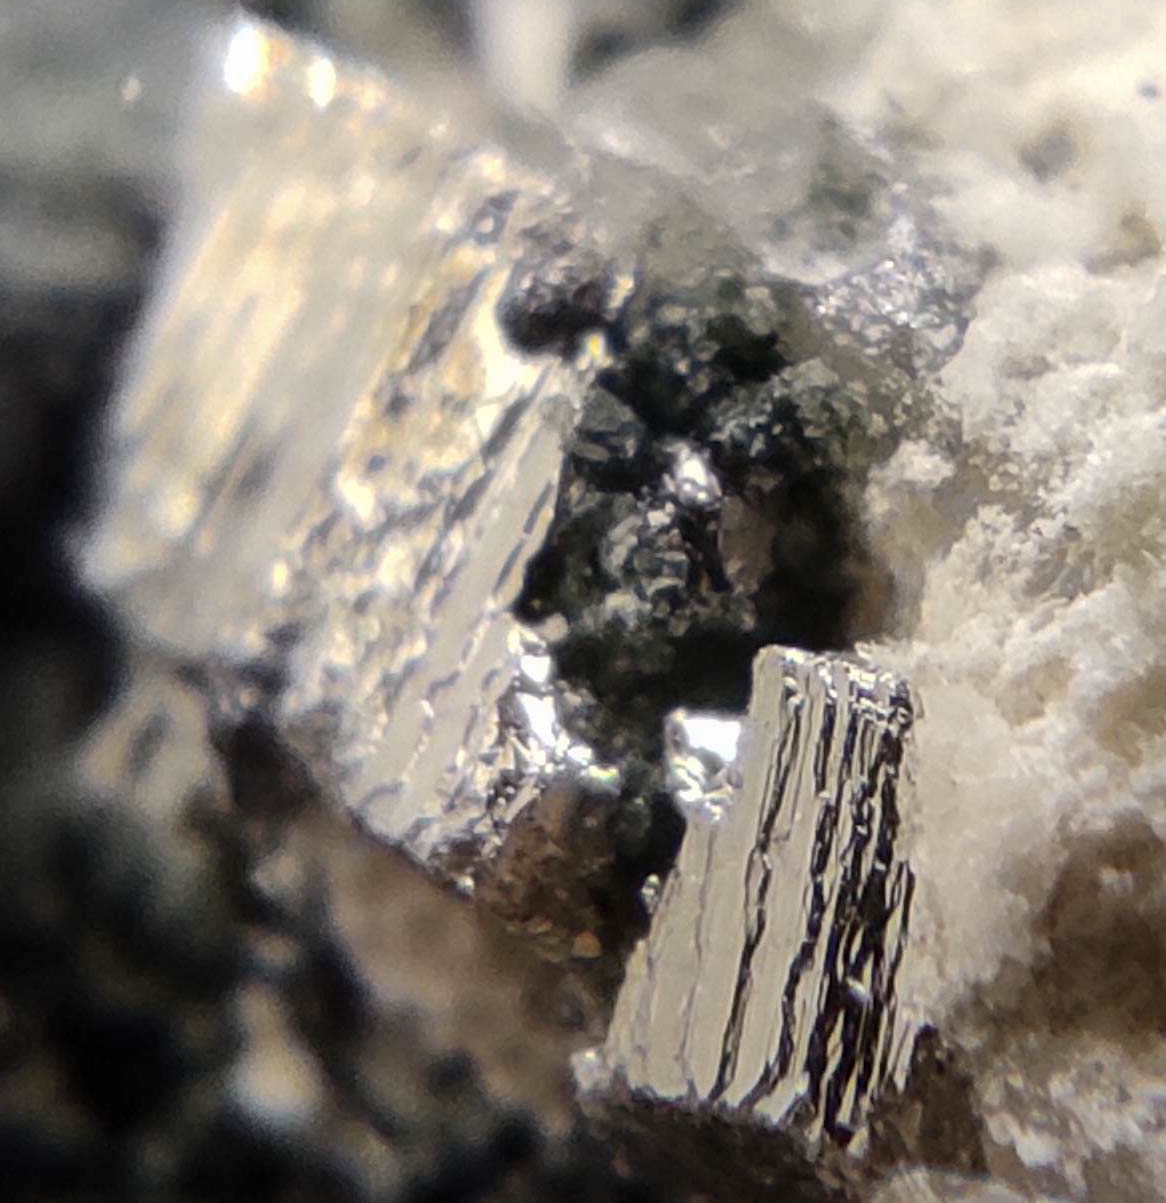 Sphalerite Quartz Rhodochrosite Calcite & Pyrite